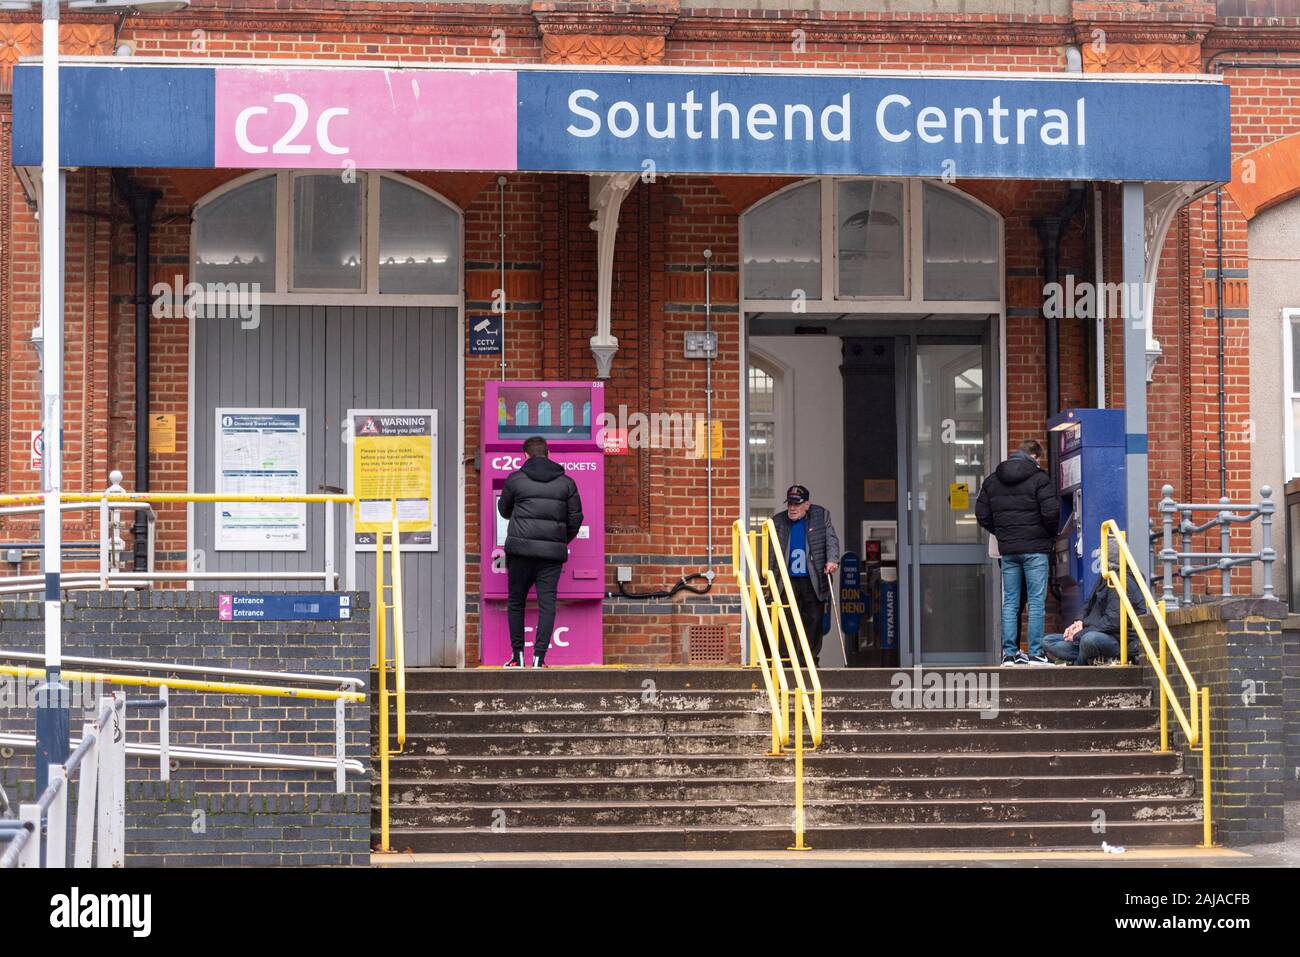 Neues Ticket Maschine außerhalb Trenitalia C2C Southend Central Railway Station in Southend On Sea, Essex, Großbritannien. Passagier mit Maschine. Problematische system Stockfoto